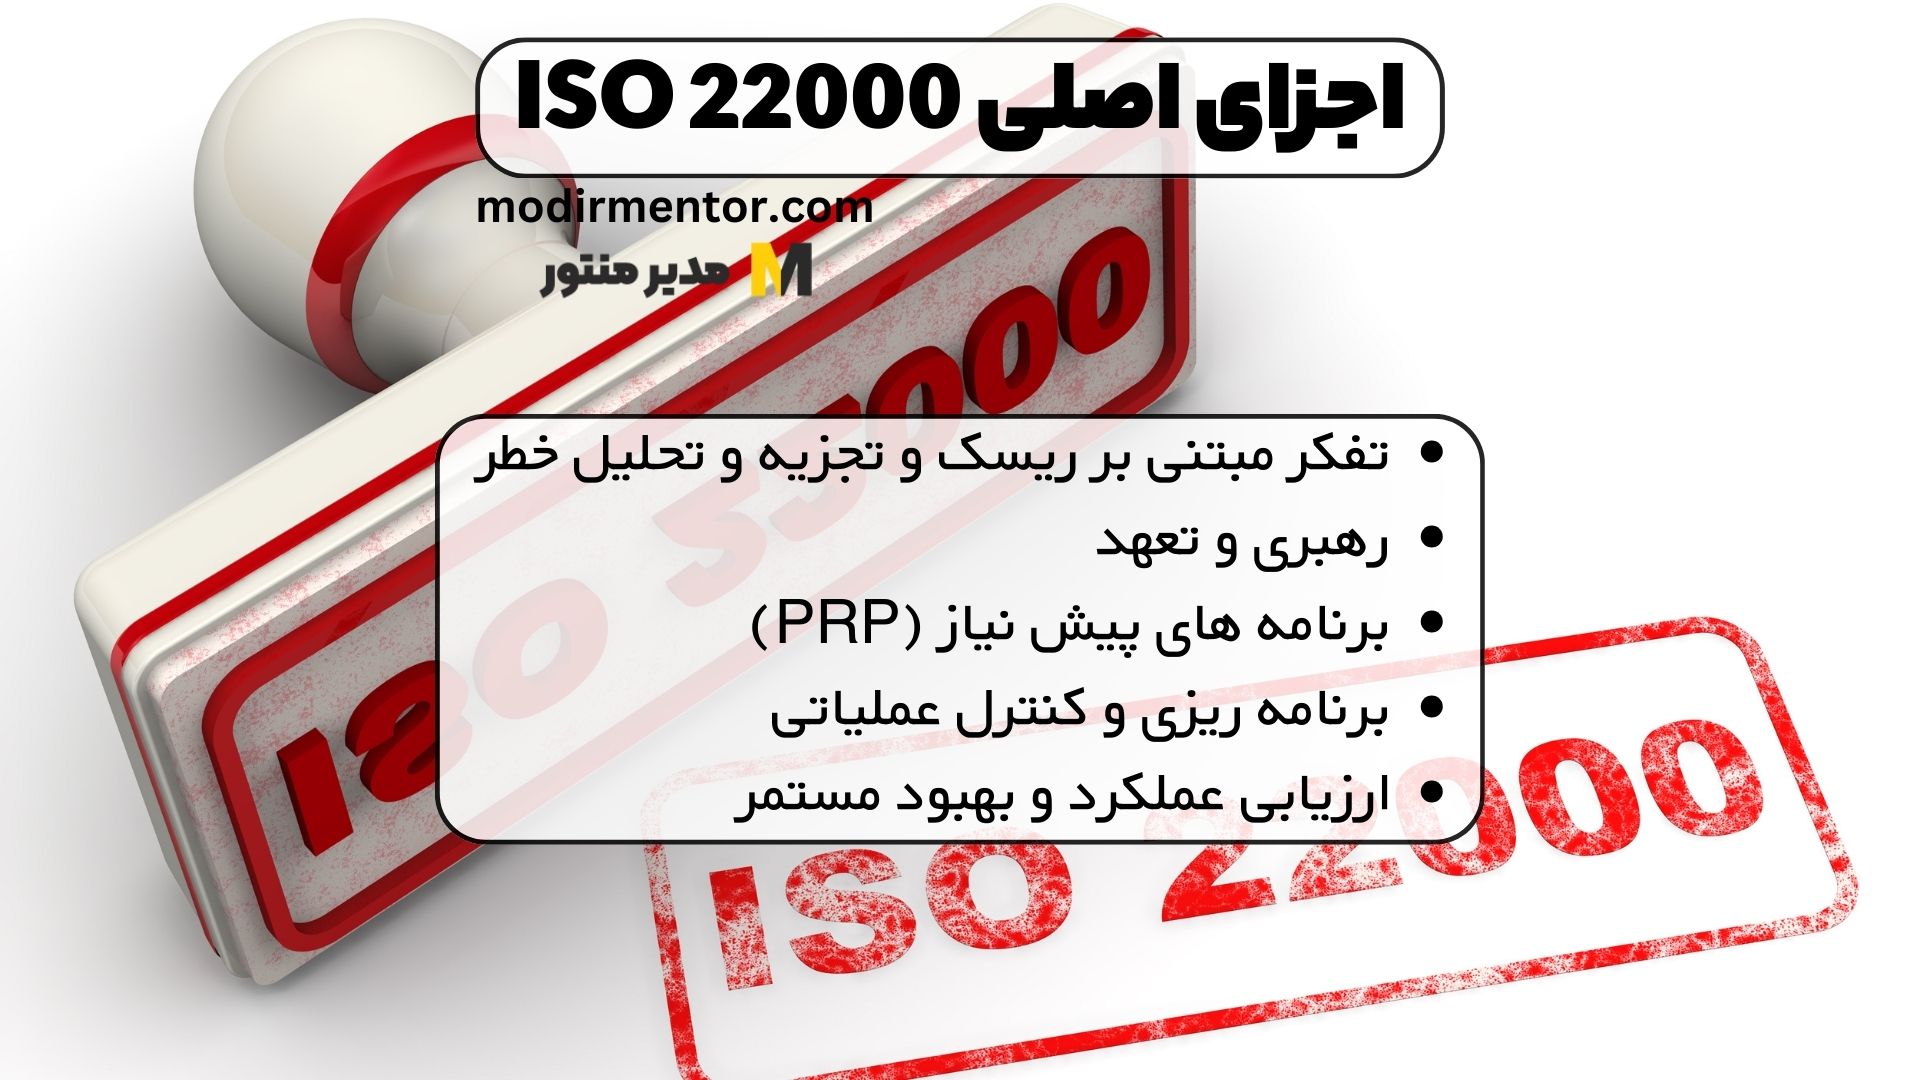 اجزای اصلی ISO 22000